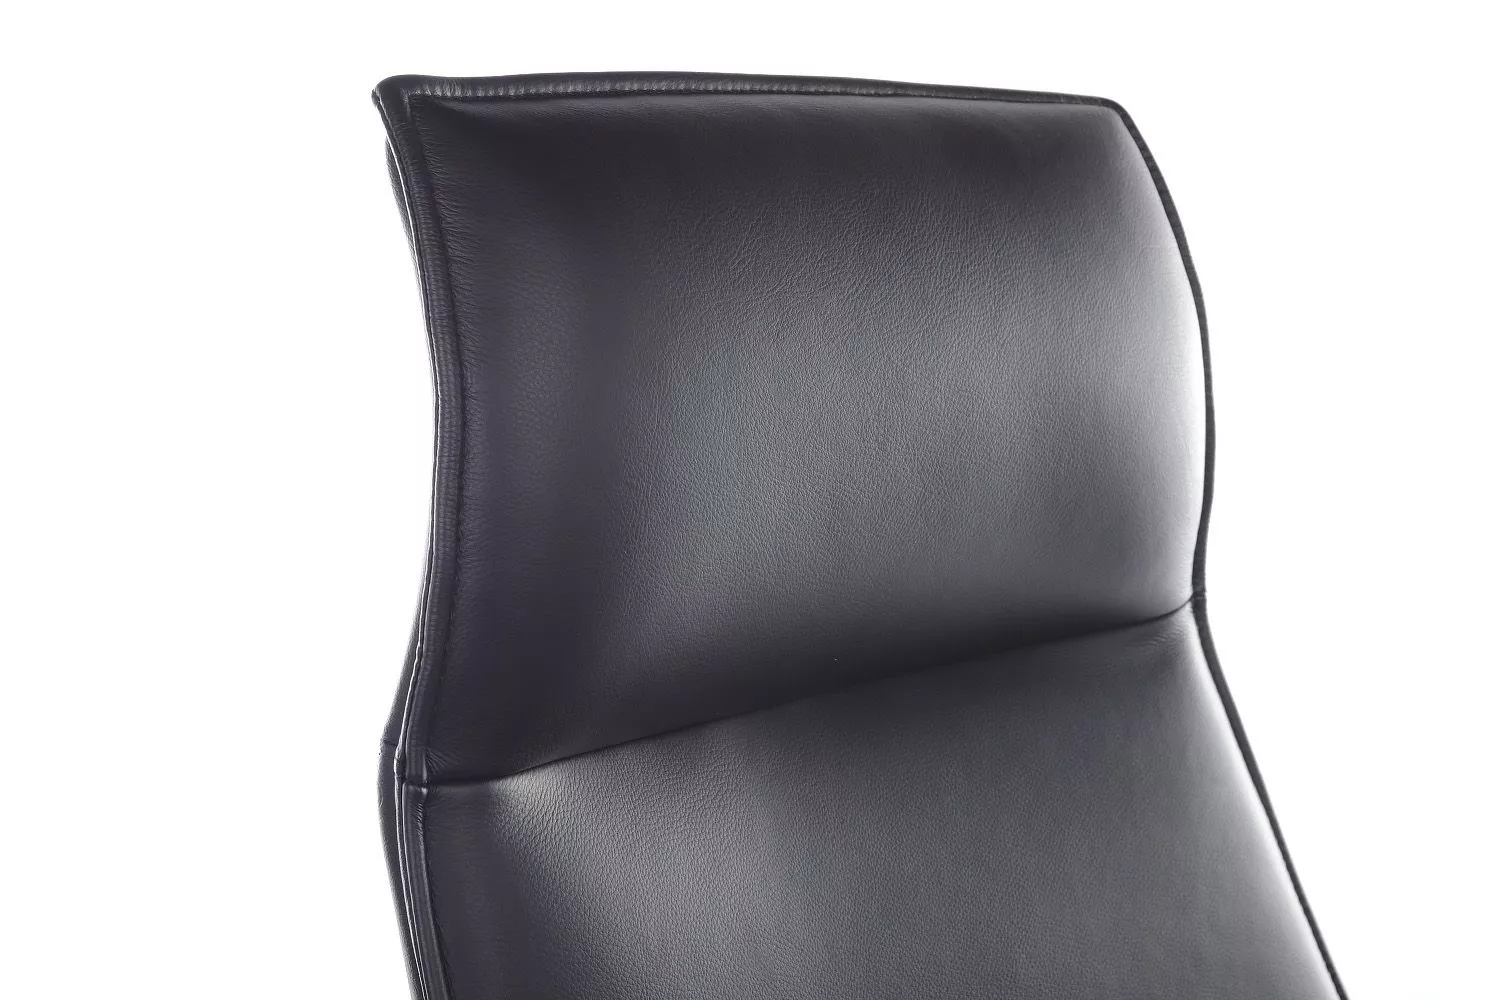 Кресло RIVA DESIGN Rosso (А1918) черный